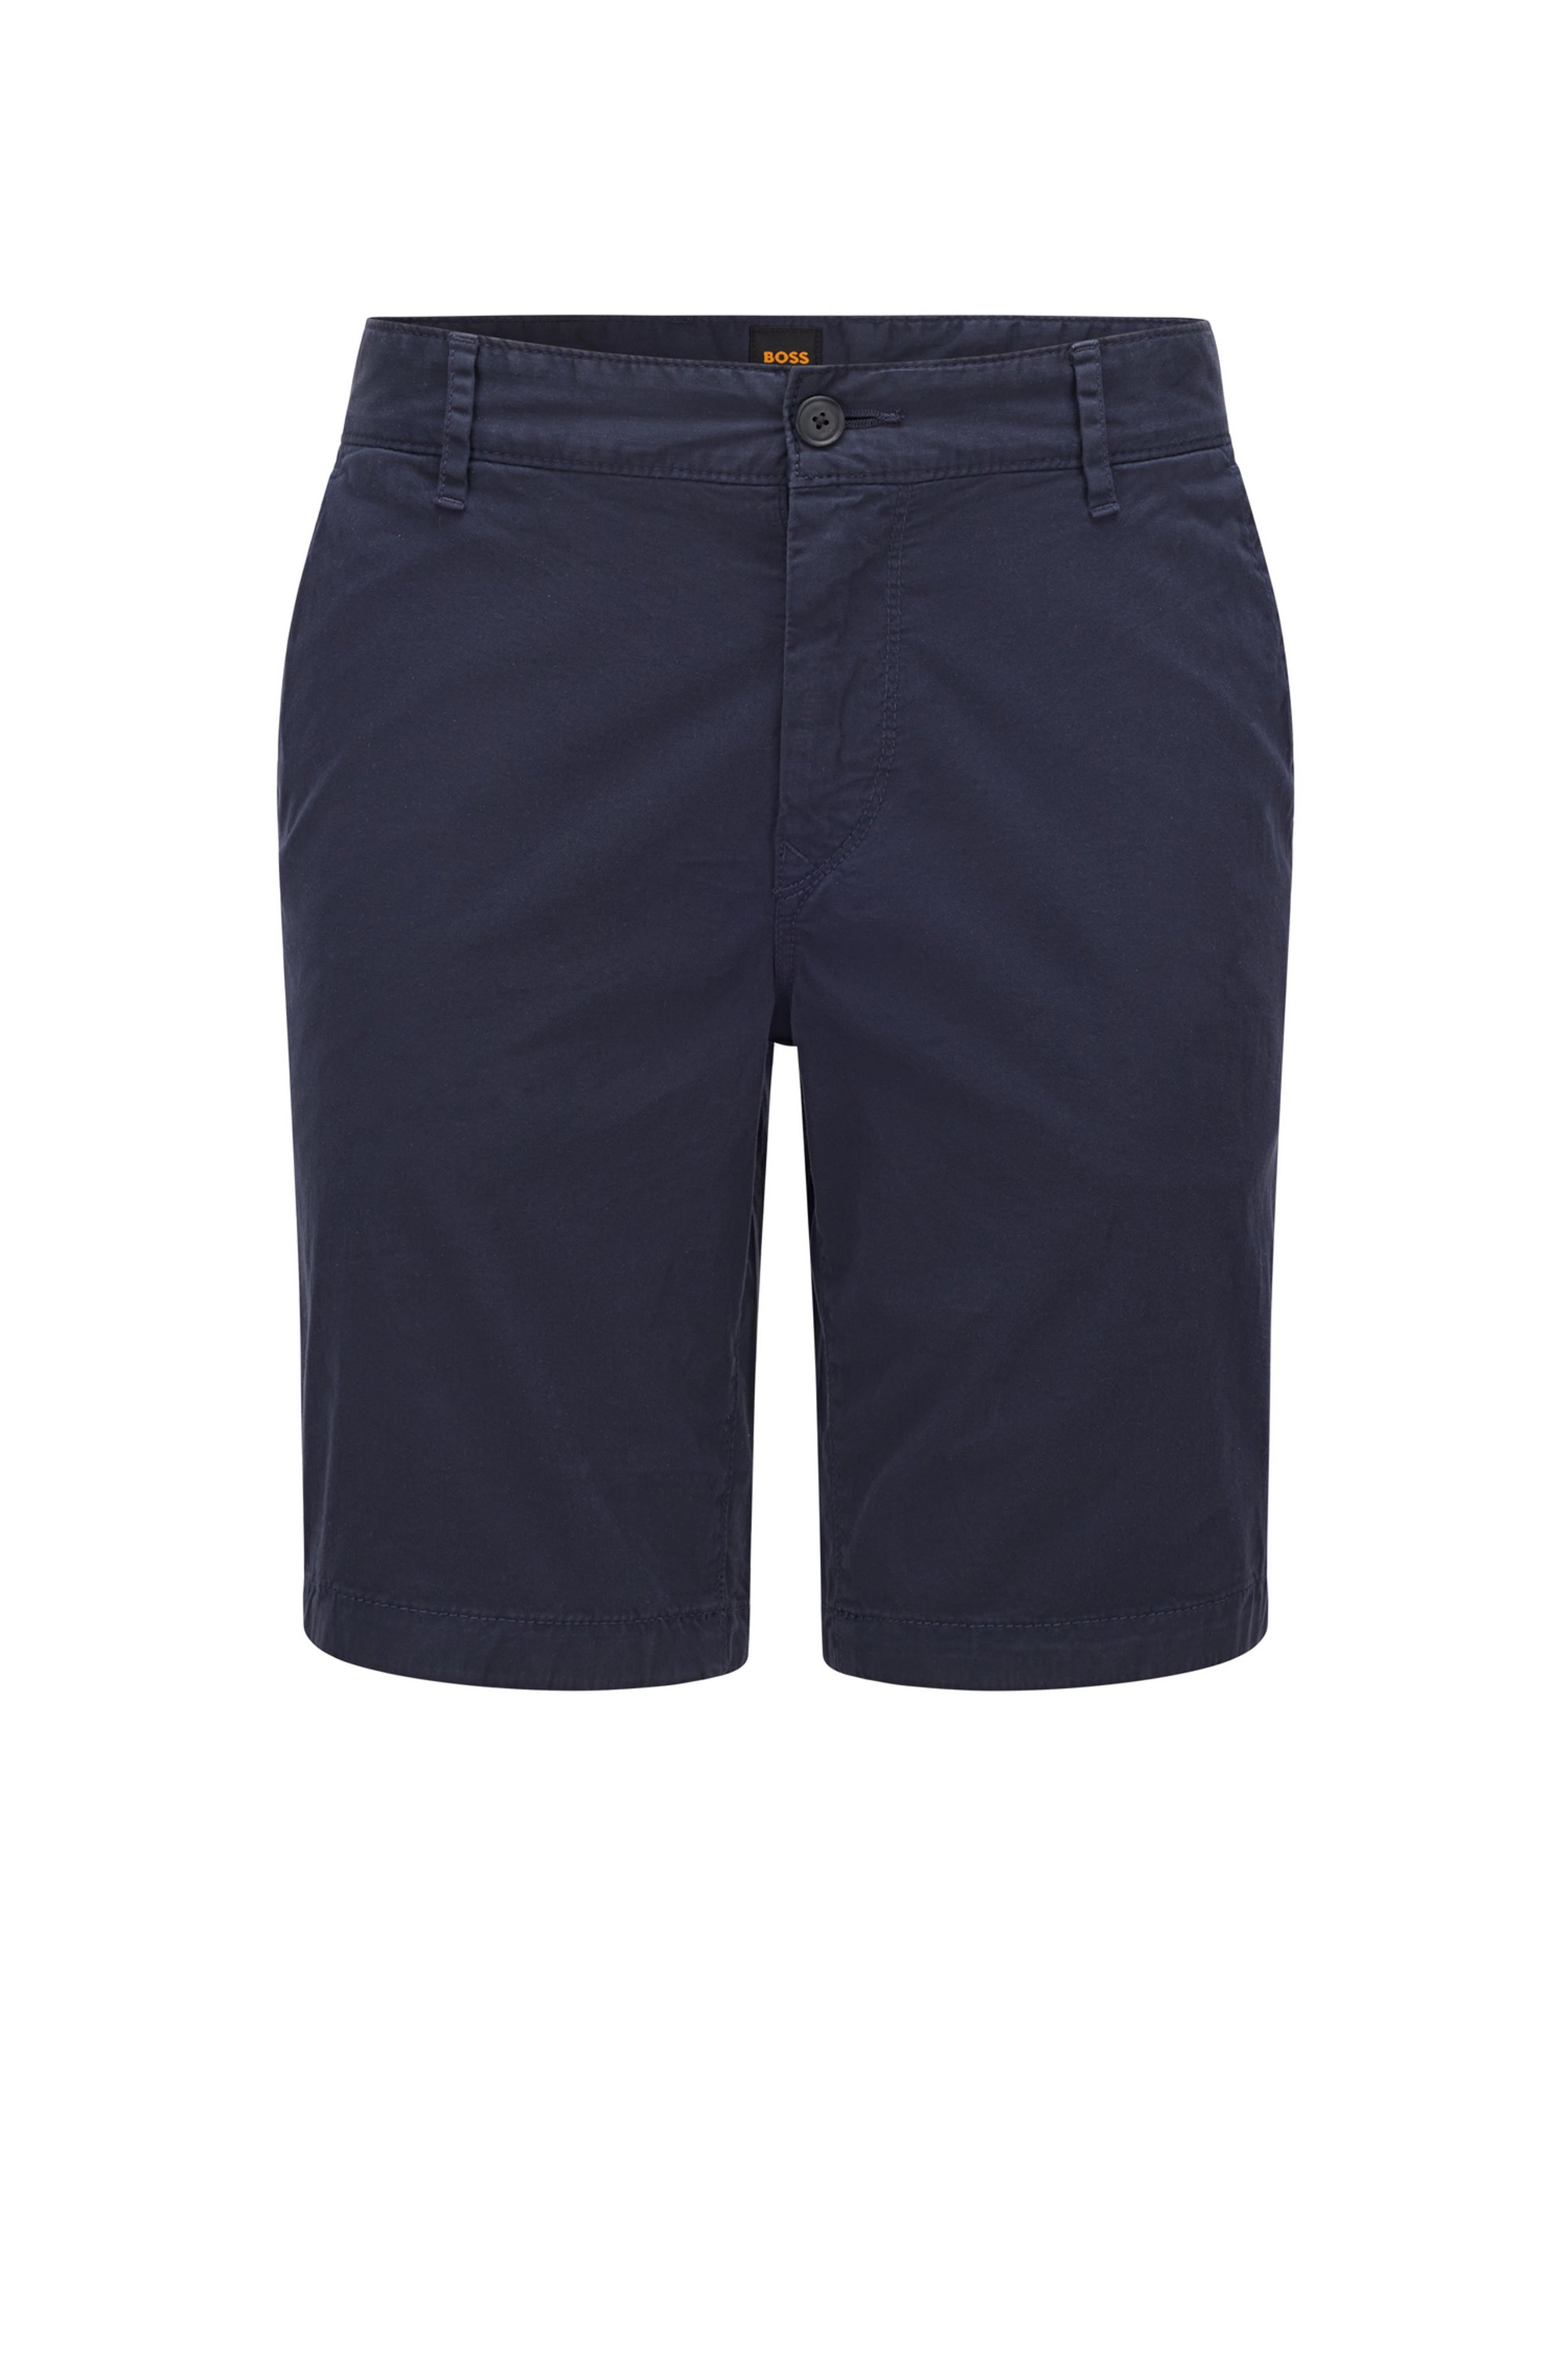 Shorts slim fit de sarga de algodón elástico, Azul oscuro